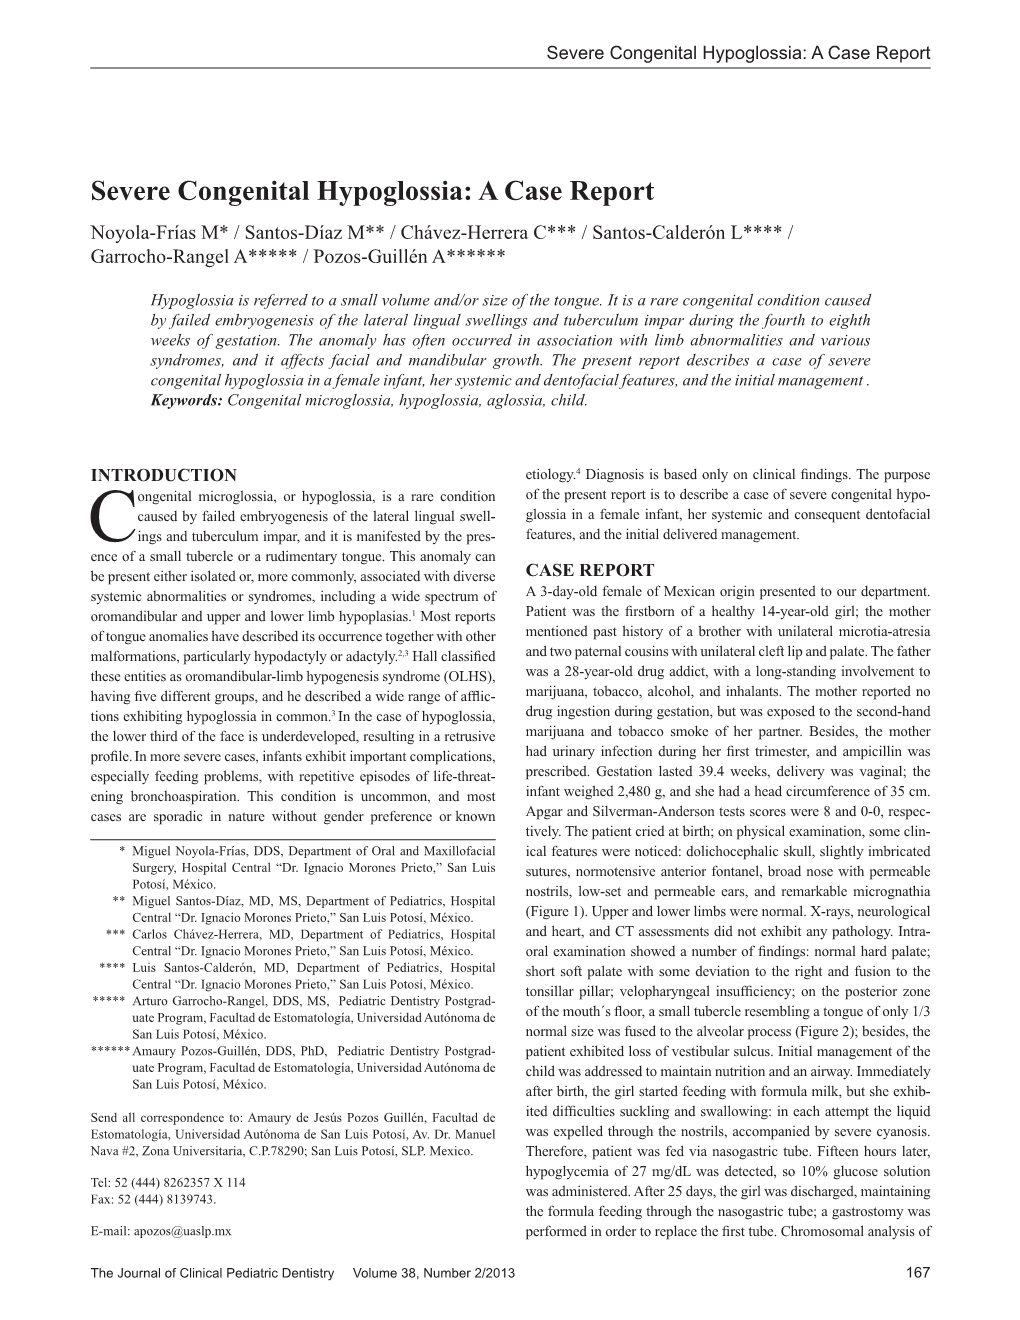 Severe Congenital Hypoglossia: a Case Report